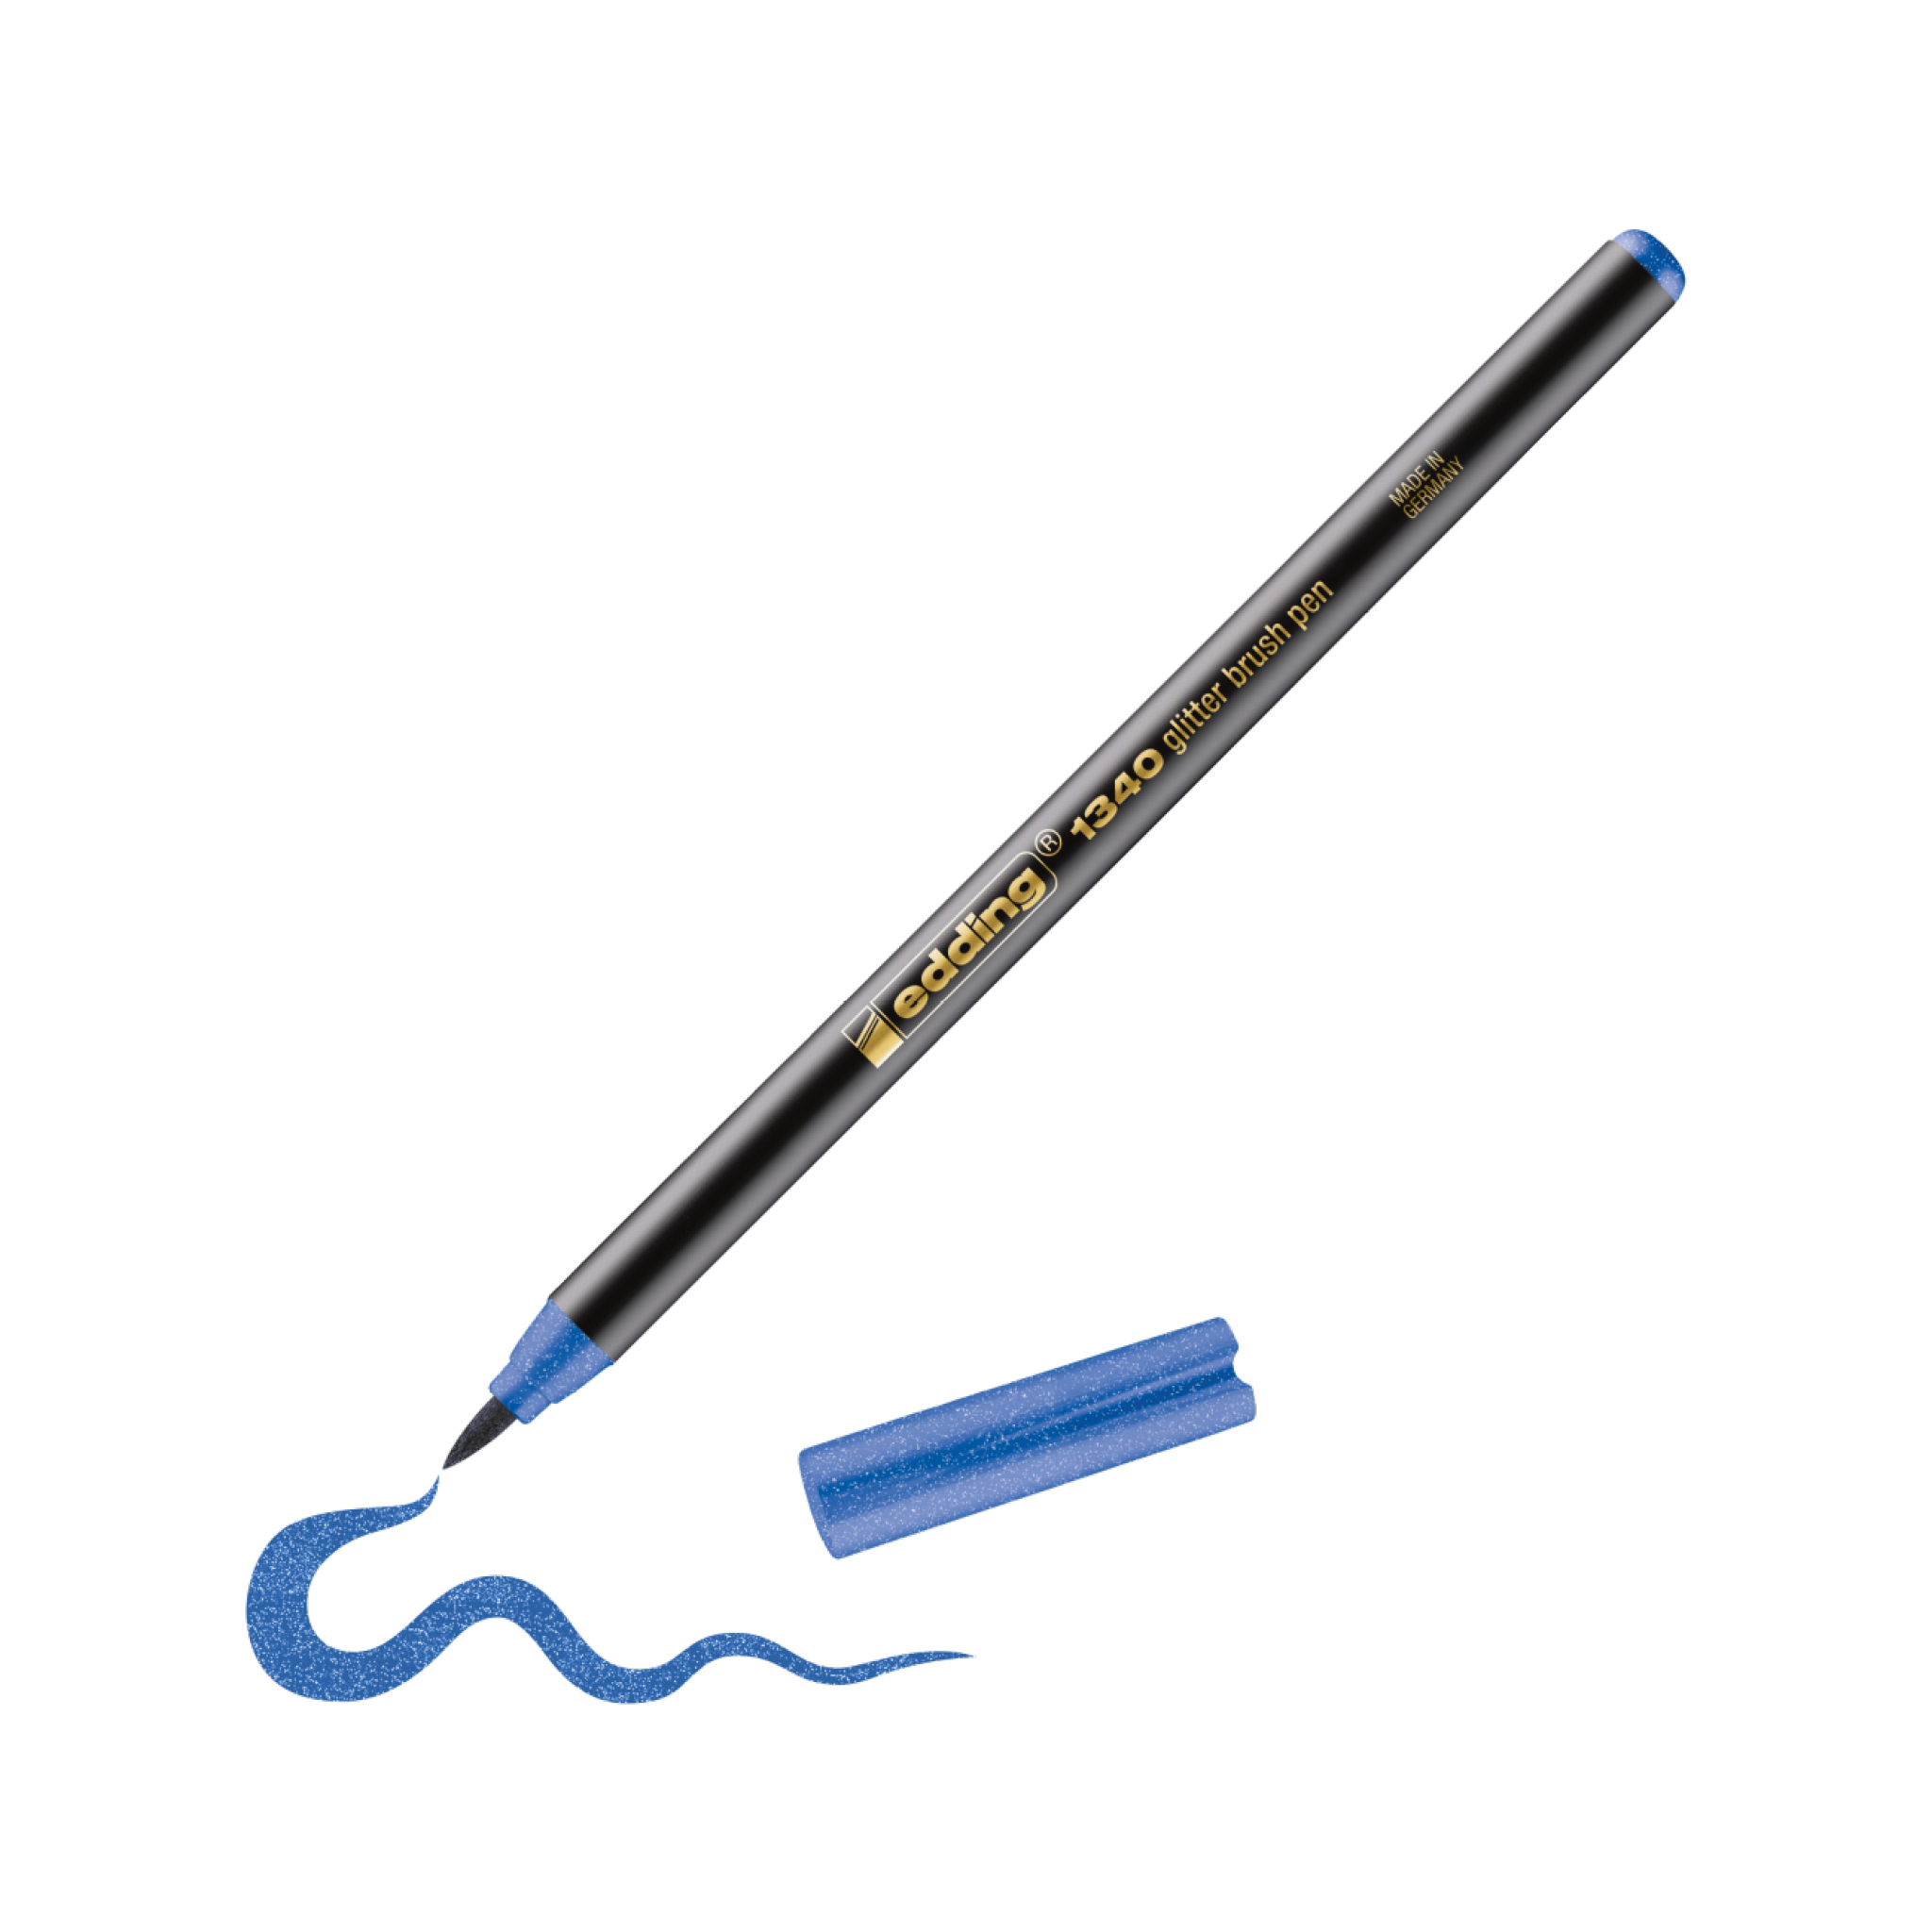 Ein blauer edding 1340 Glitzer-Pinselstift, geeignet für Handlettering, zeichnet eine Wellenlinie auf einen weißen Hintergrund, daneben liegt ein einzelnes Stück Mine.